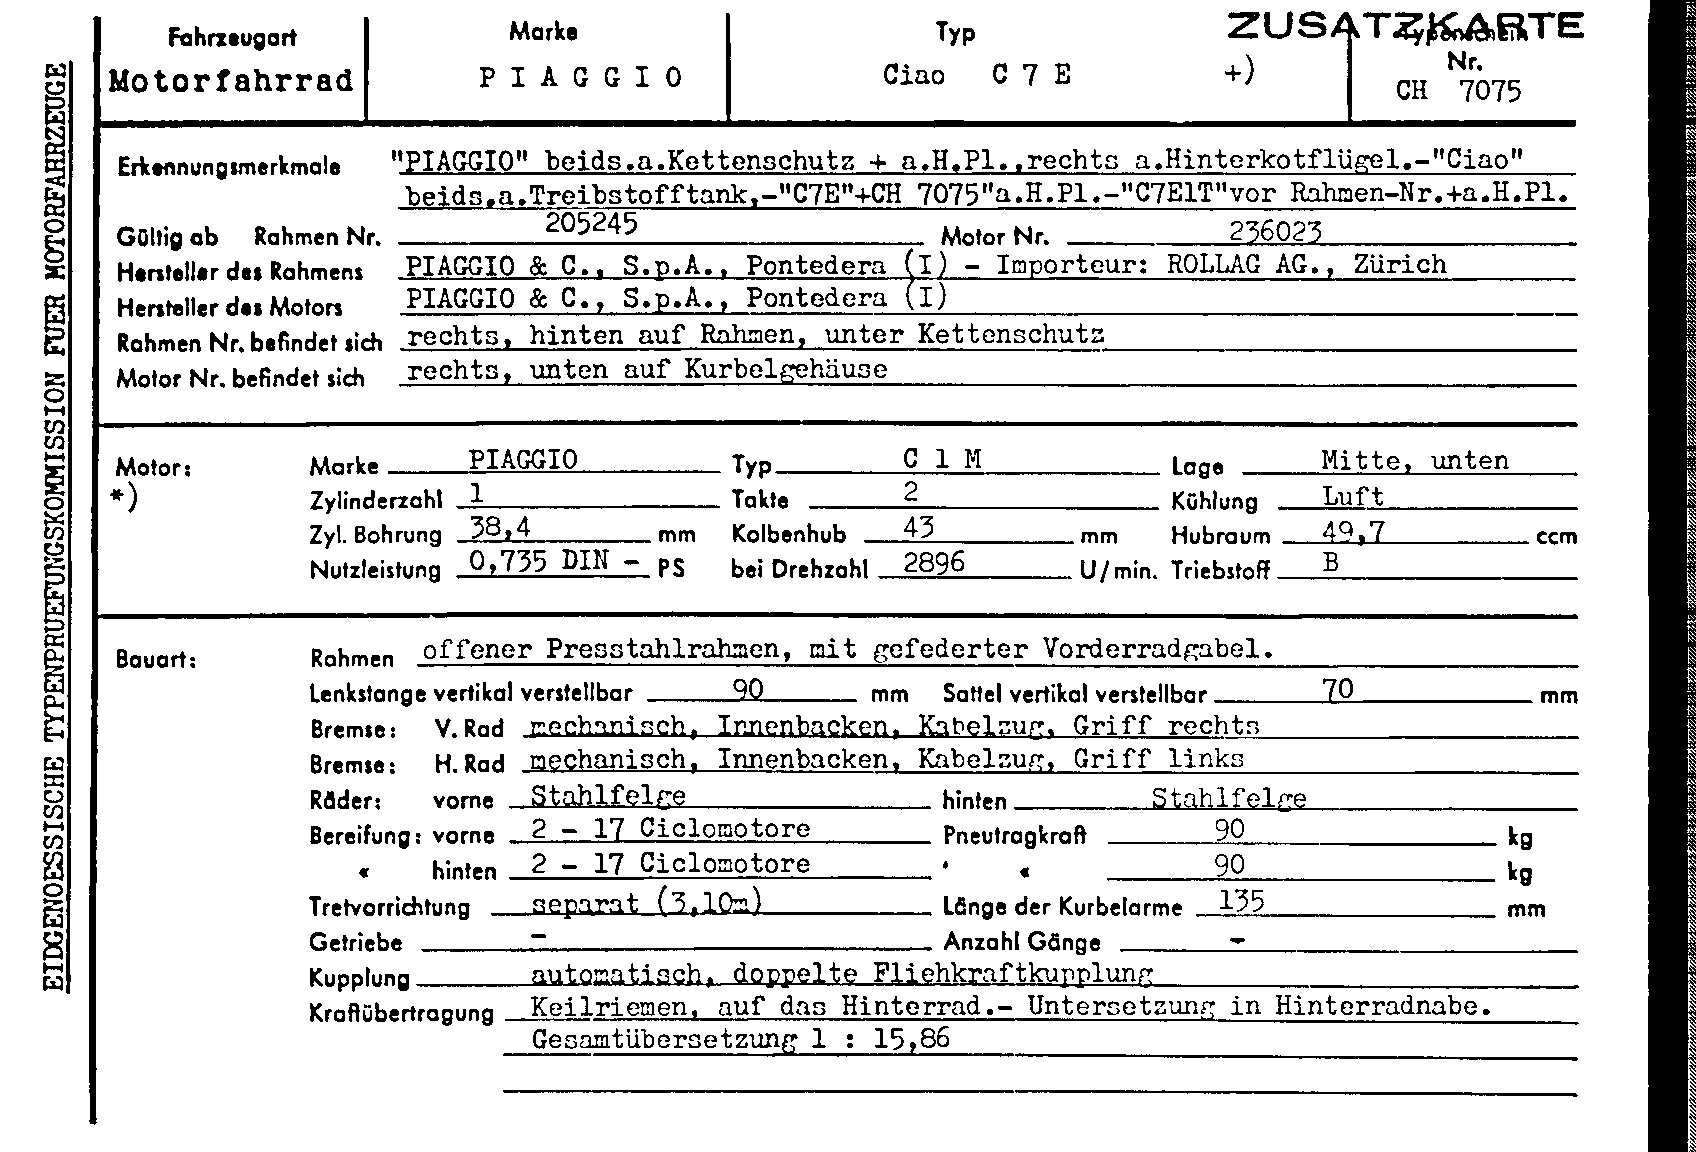 Swiss Certificate of Conformity 7075 German Page 1 (TG.DE.7075.1.png)